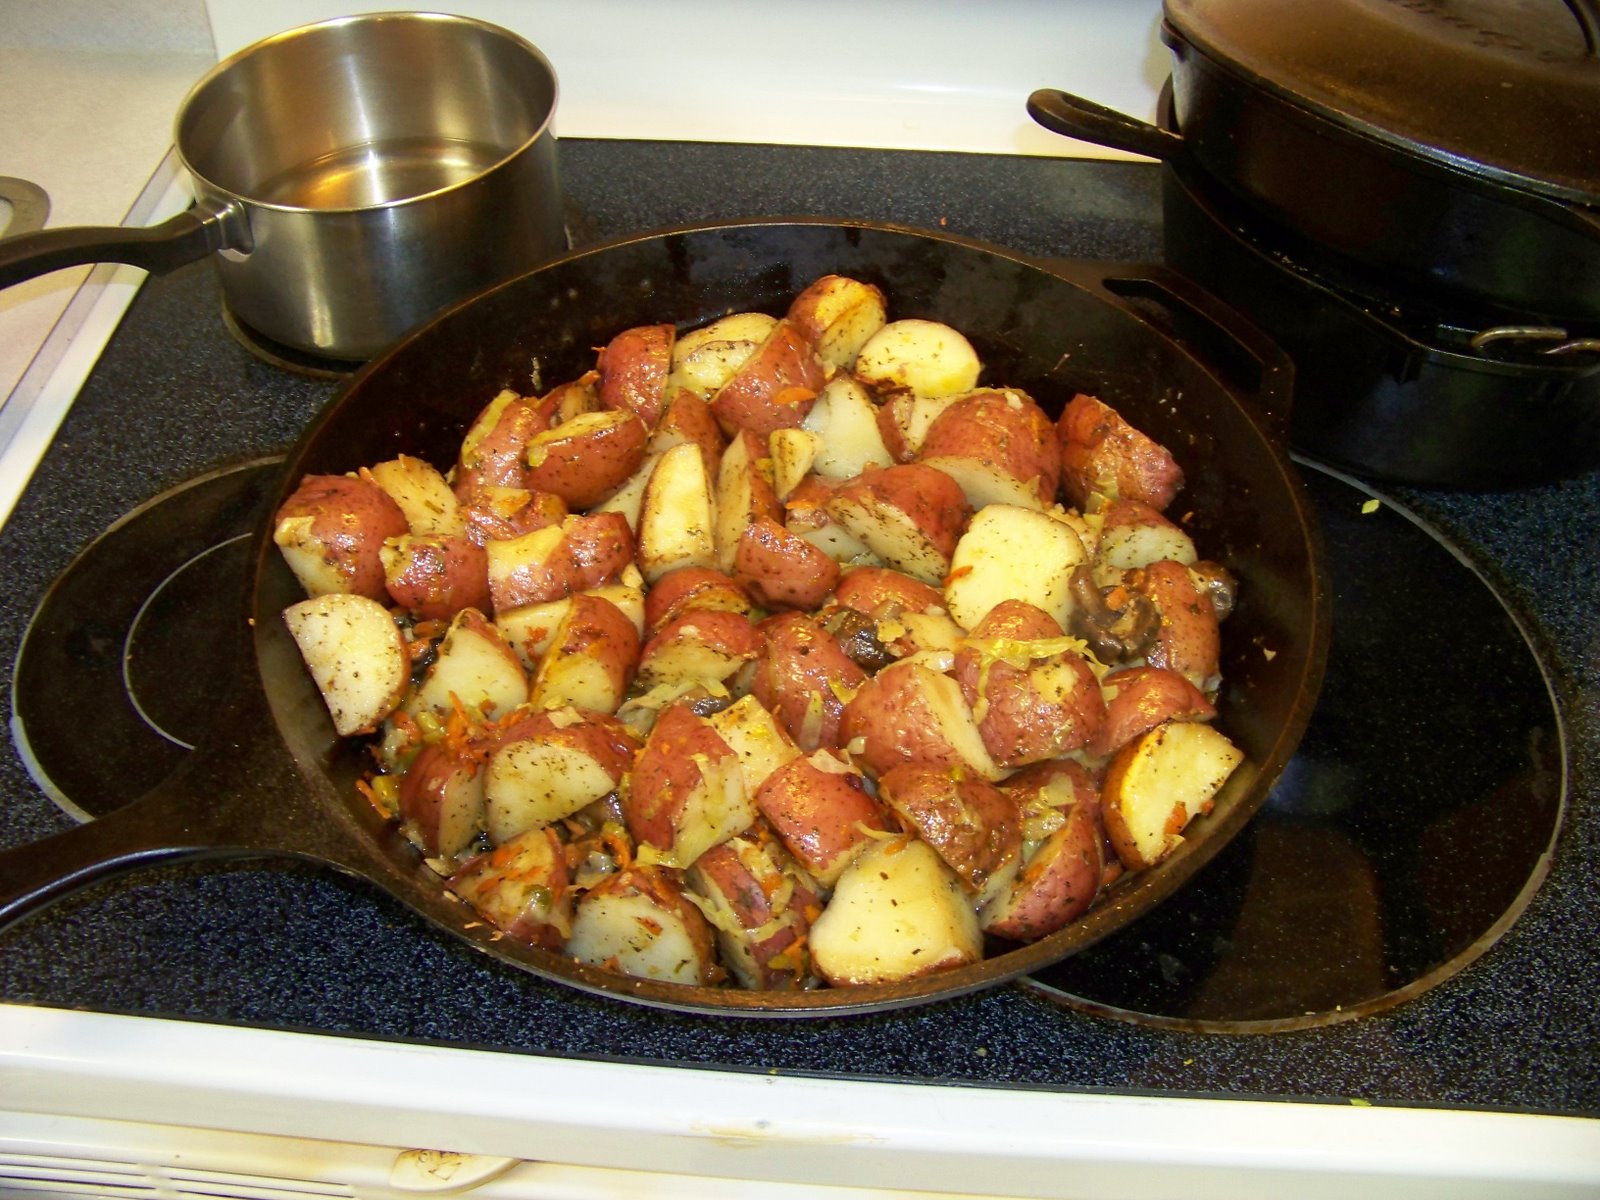 Жареная картошка с мясом на сковороде рецепт с фото пошагово в домашних условиях